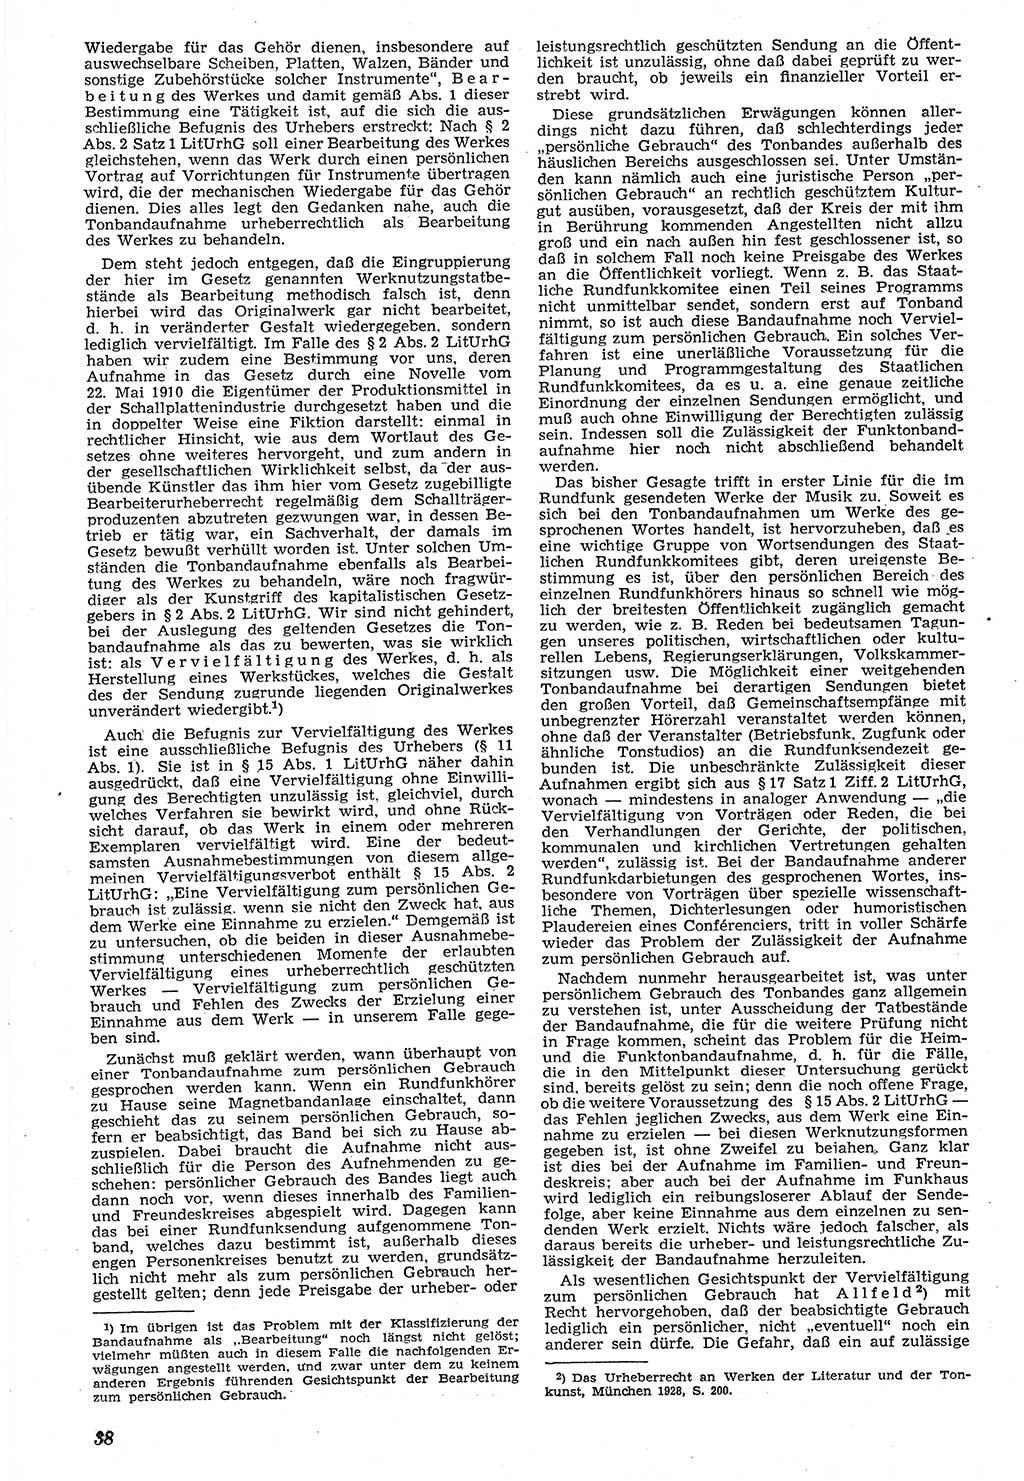 Neue Justiz (NJ), Zeitschrift für Recht und Rechtswissenschaft [Deutsche Demokratische Republik (DDR)], 7. Jahrgang 1953, Seite 38 (NJ DDR 1953, S. 38)